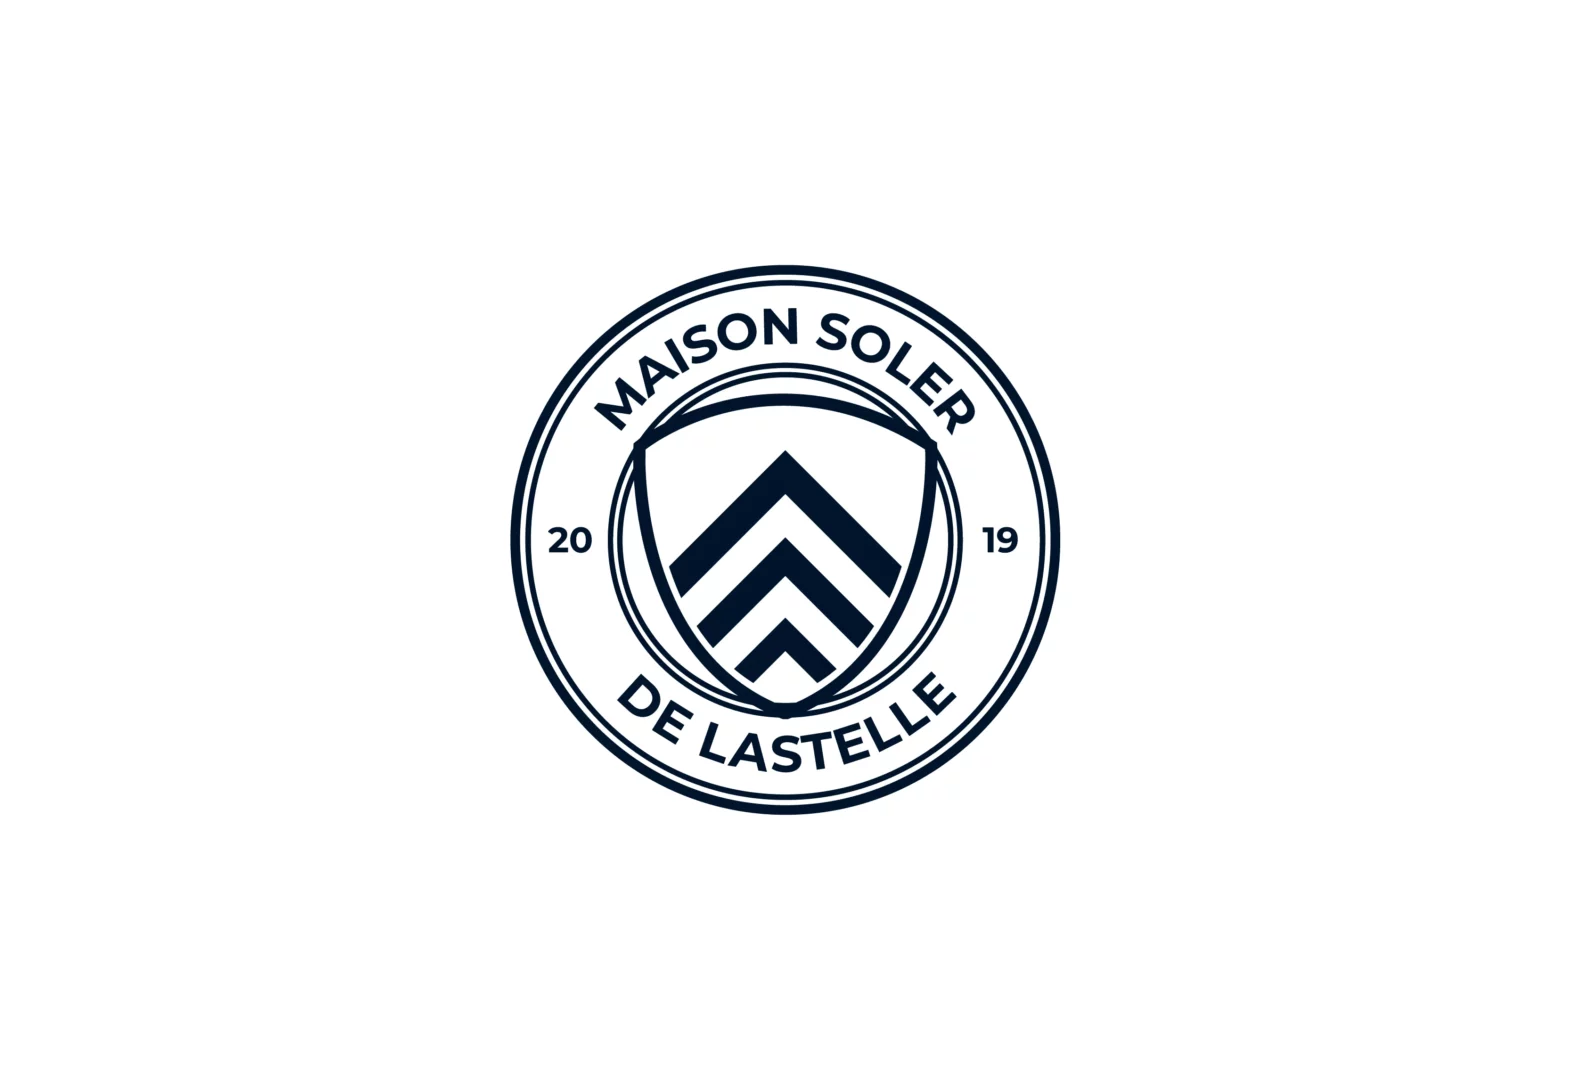 Logos-clients_Maison-Soler-de-Lastelle